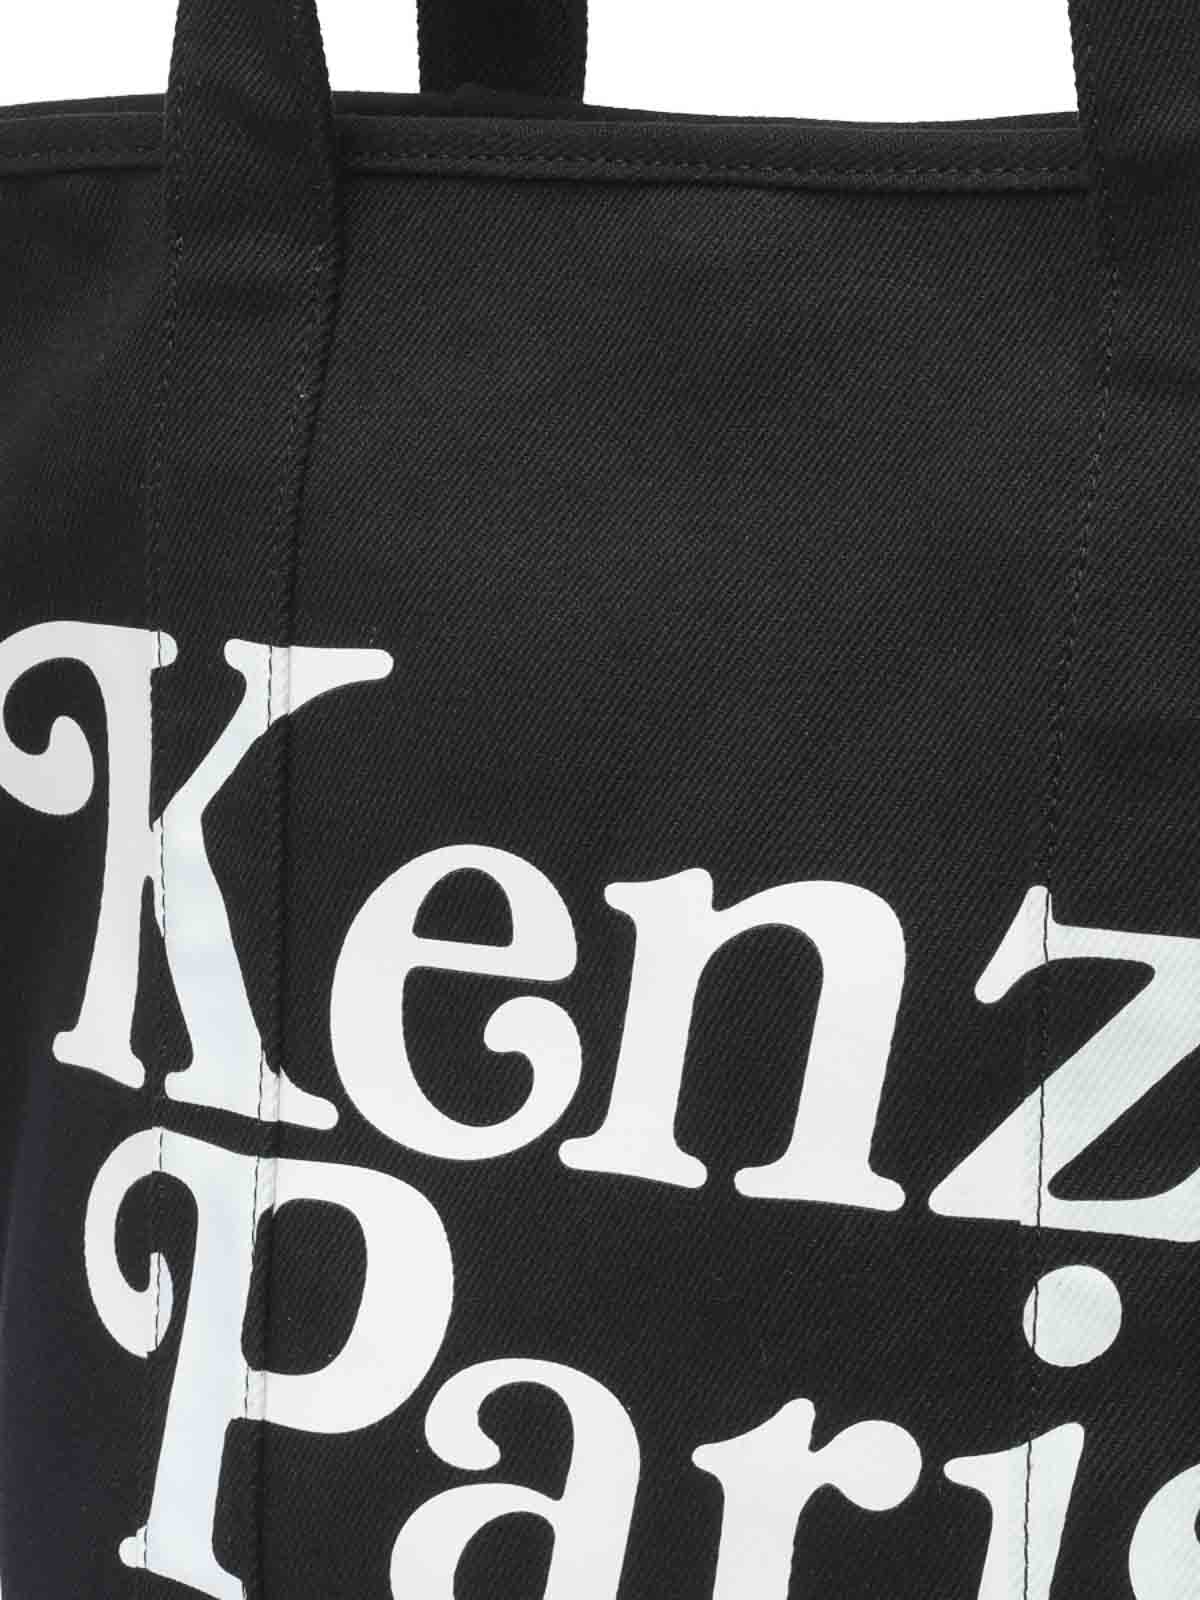 Shop Kenzo Paris Tote Bag In Black